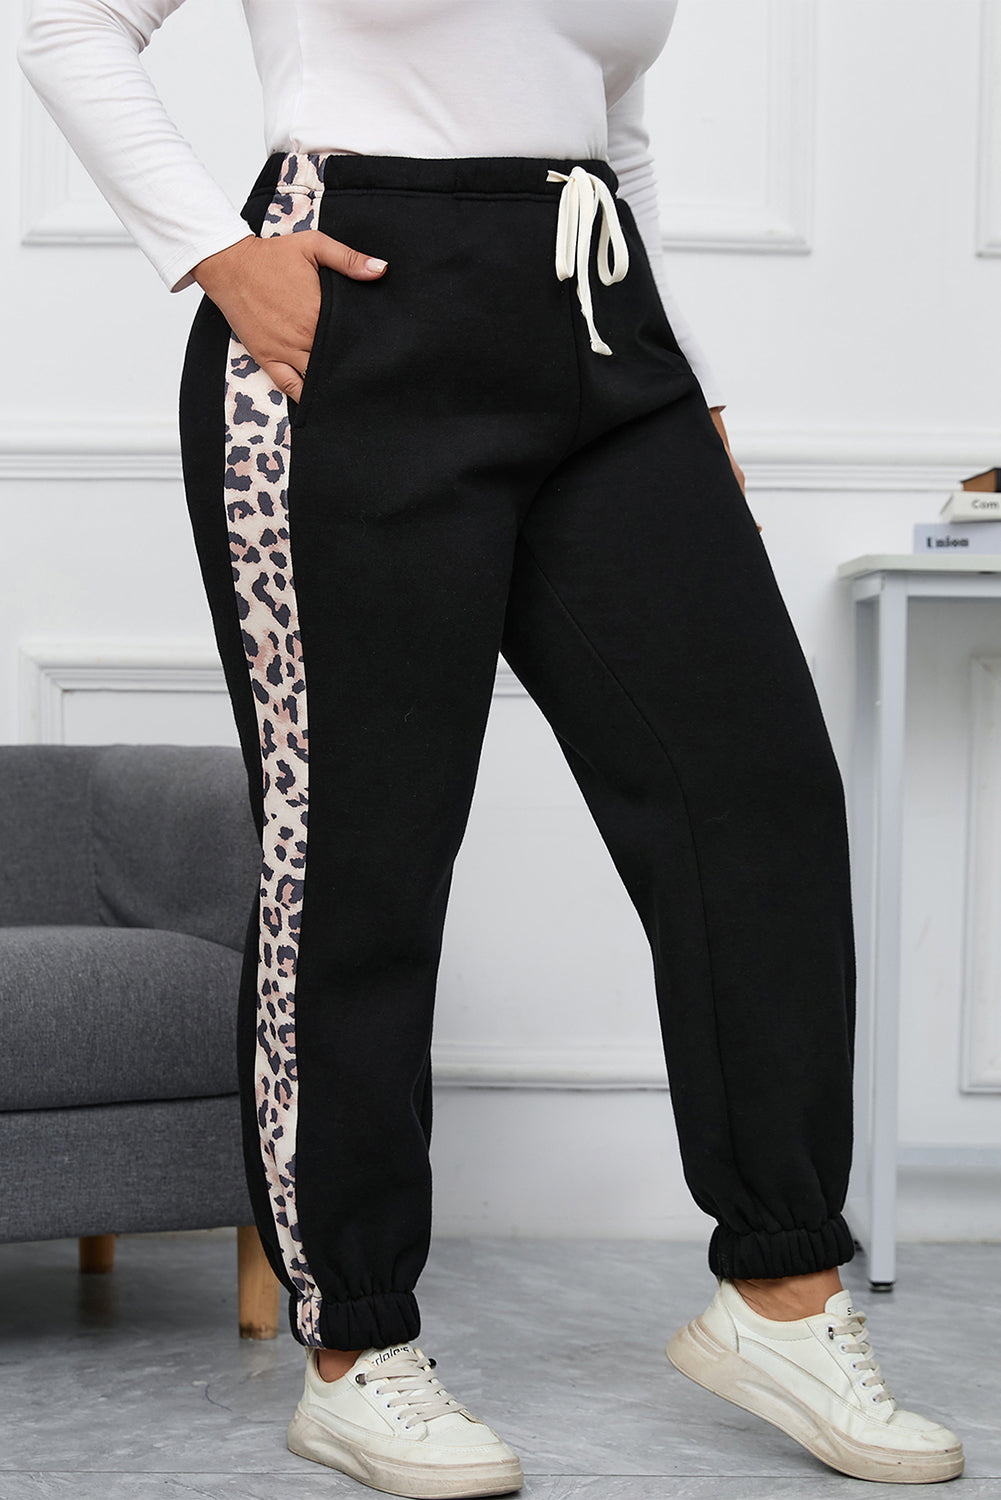 Črne tekaške hlače velike velikosti s kontrastnim leopardjim stranskim delom